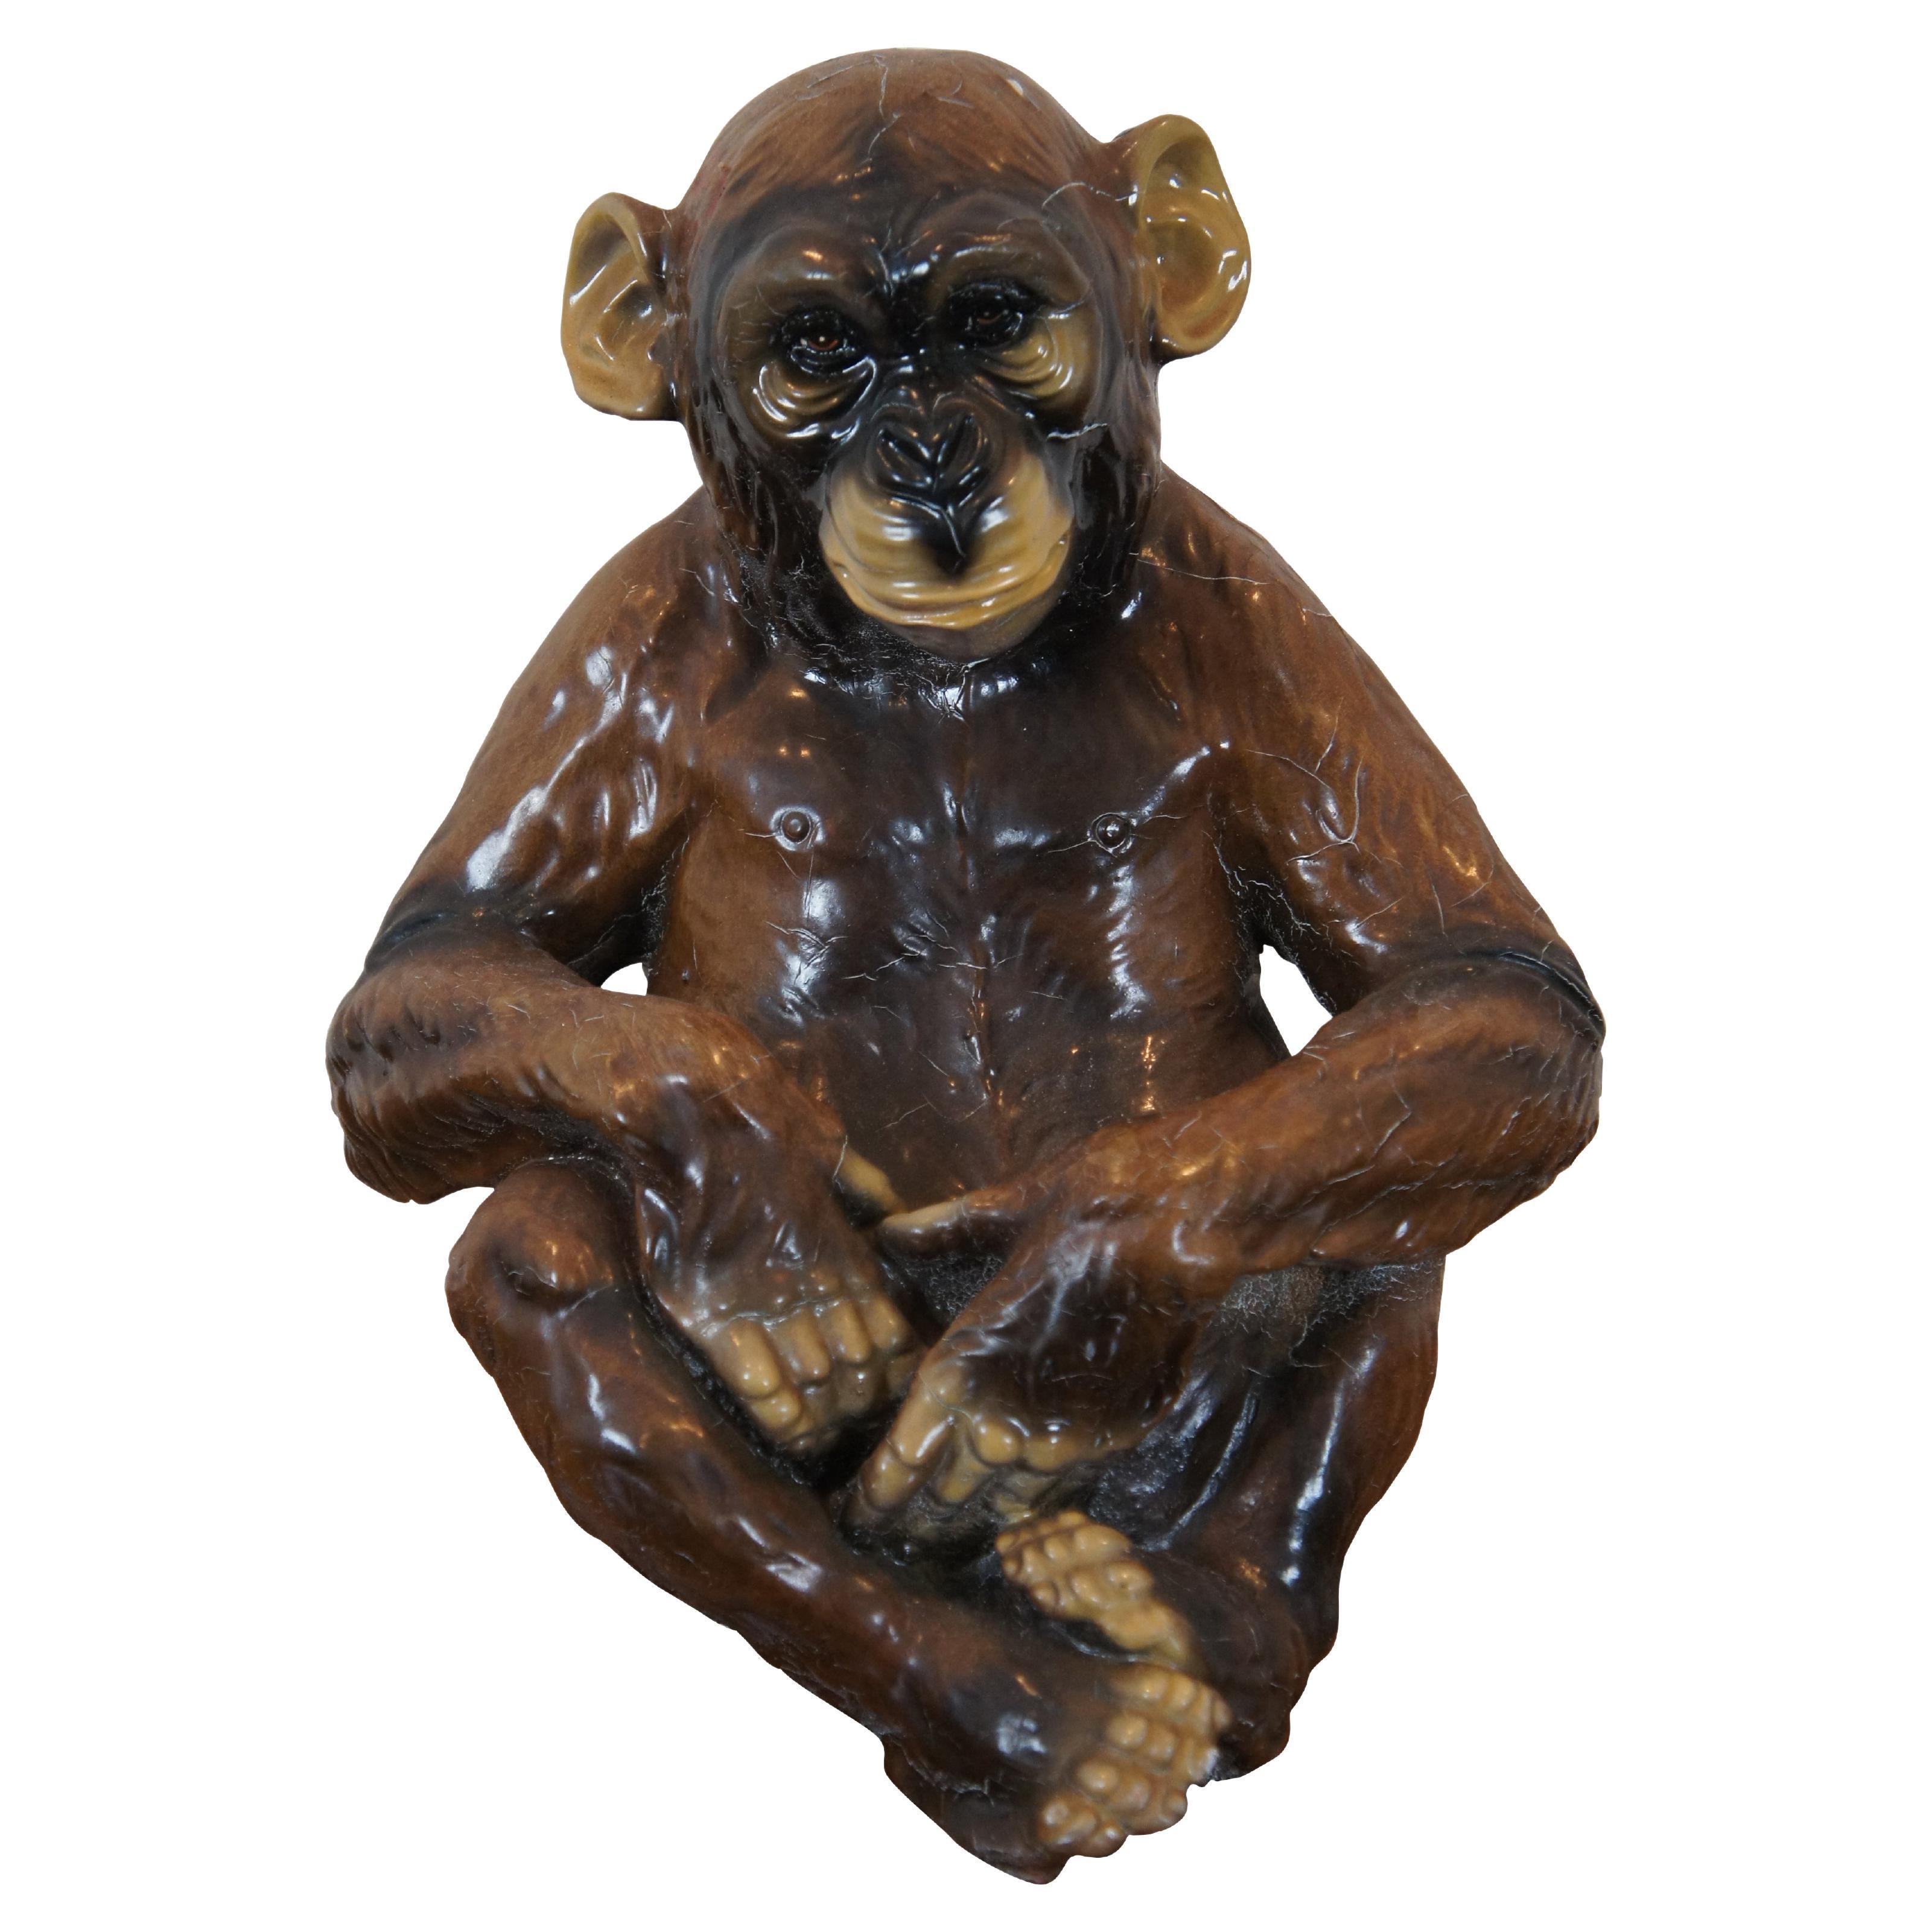 Seltene Marwal Ind Inc. sitzende Chalkware-Affen-Chimp-Ape-Skulptur Statue, 13"